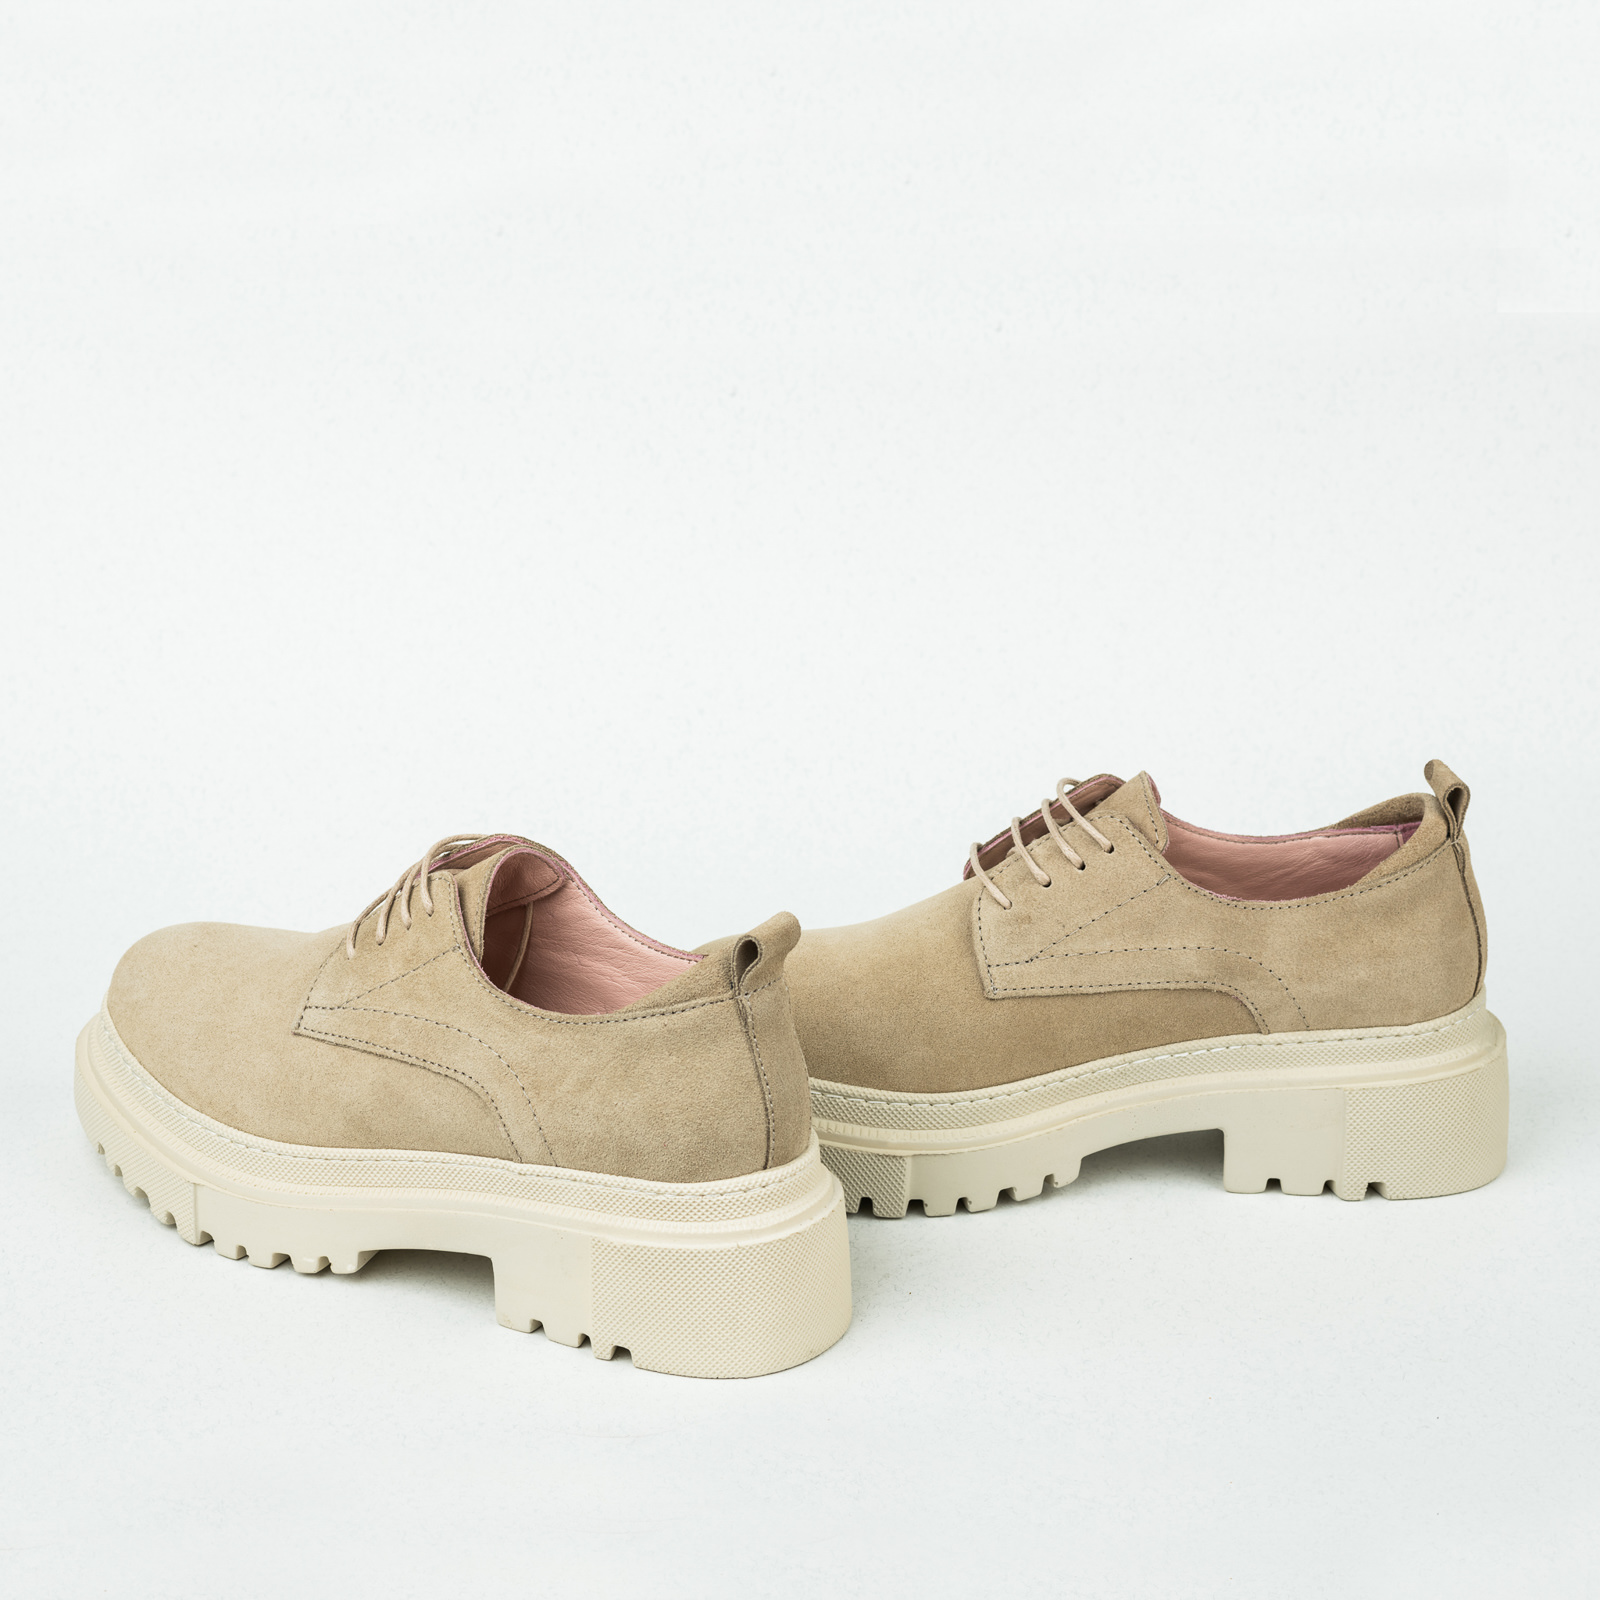 Leather shoes & flats B062 - BEIGE